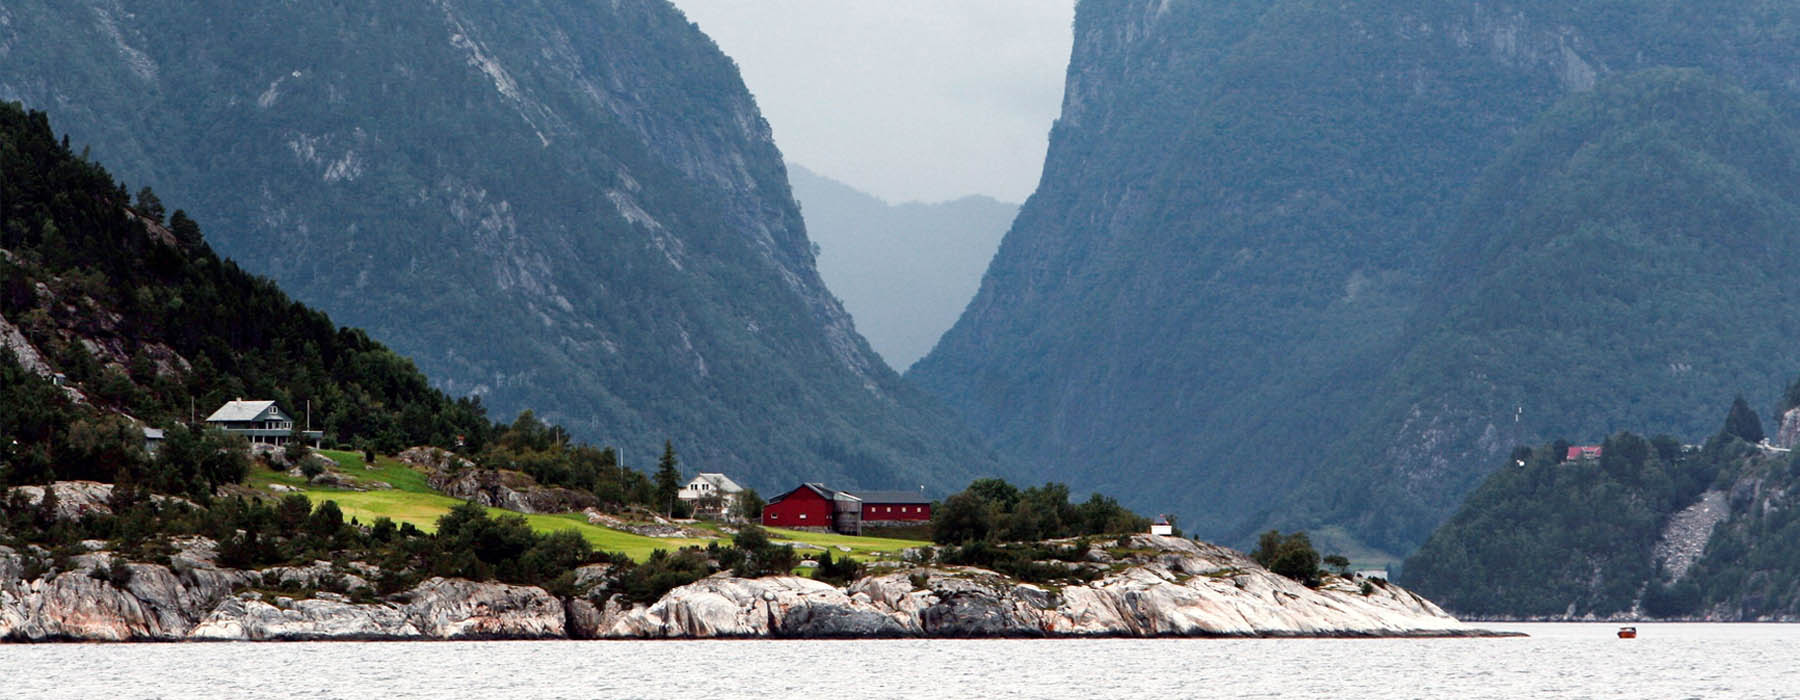 Des lieux qui s'engagent Norvège